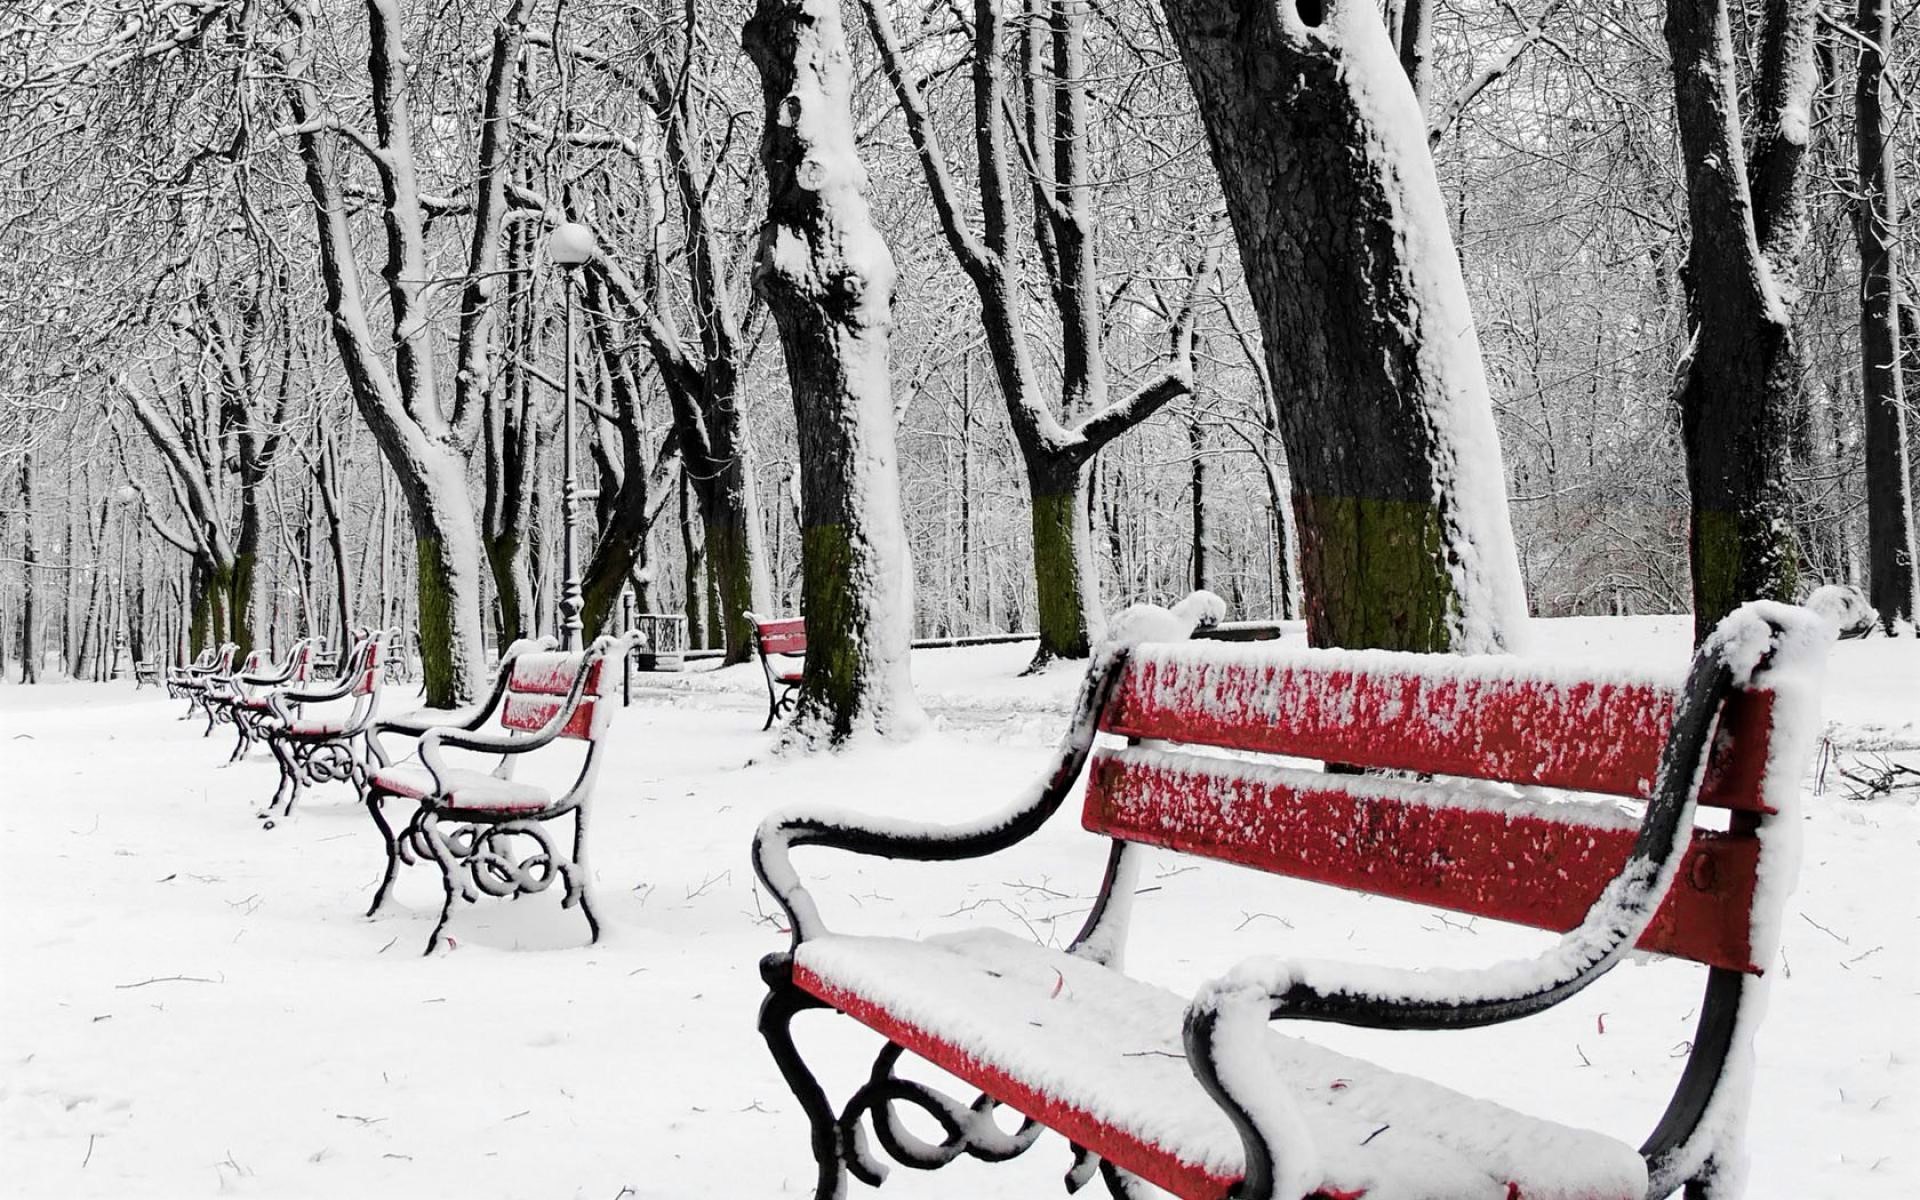 Скачать обои бесплатно Зима, Снег, Красный, Парк, Дерево, Скамья, Сделано Человеком картинка на рабочий стол ПК